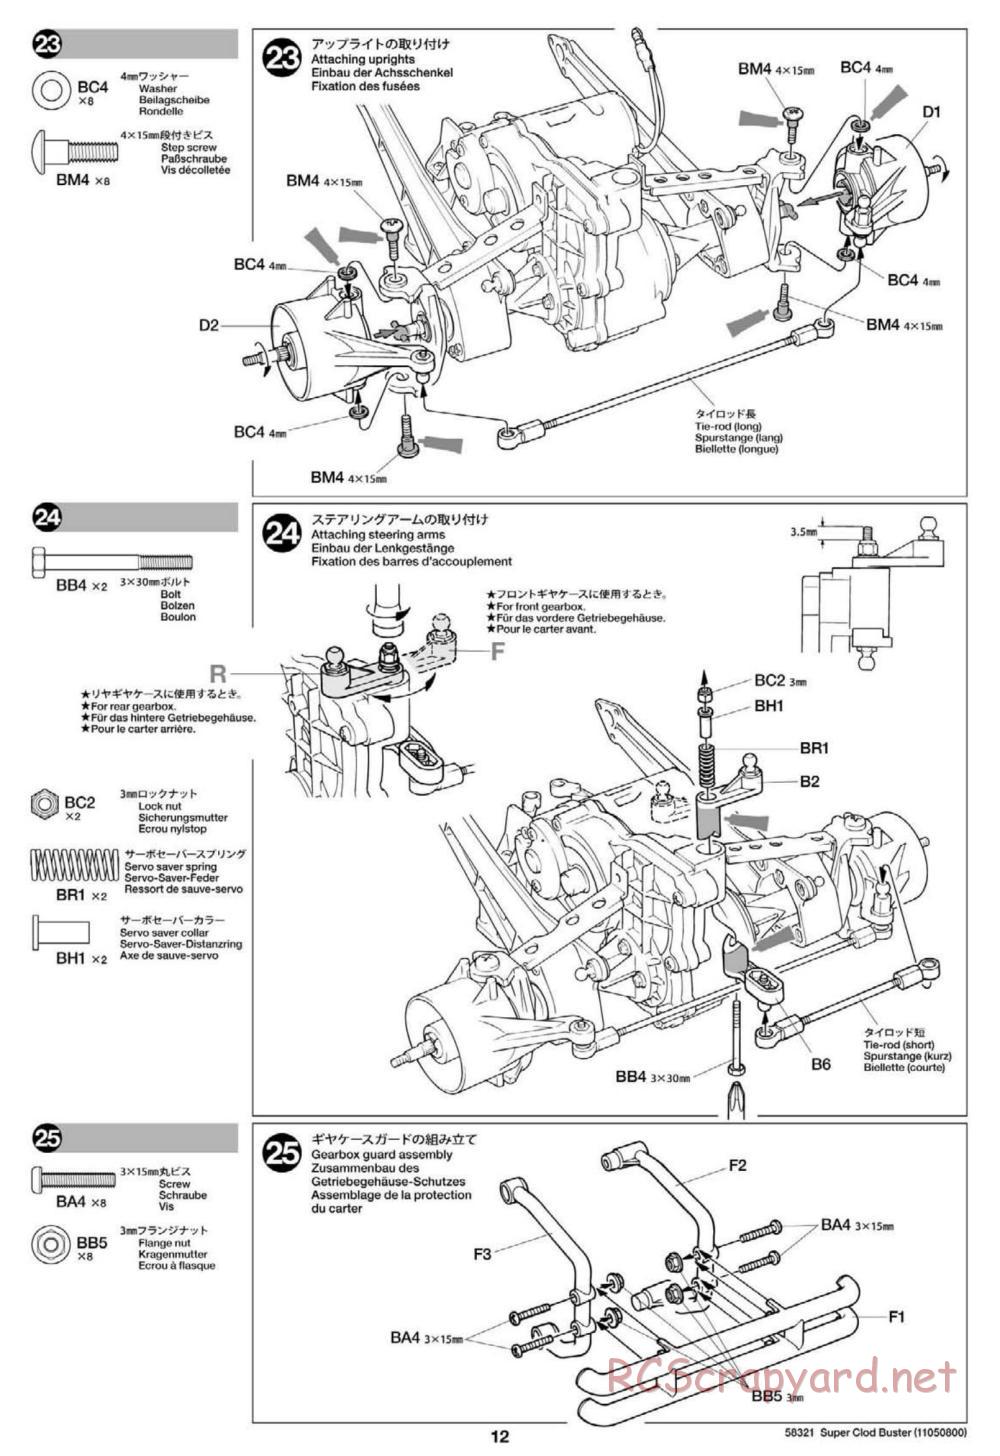 Tamiya - Super Clod Buster Chassis - Manual - Page 12